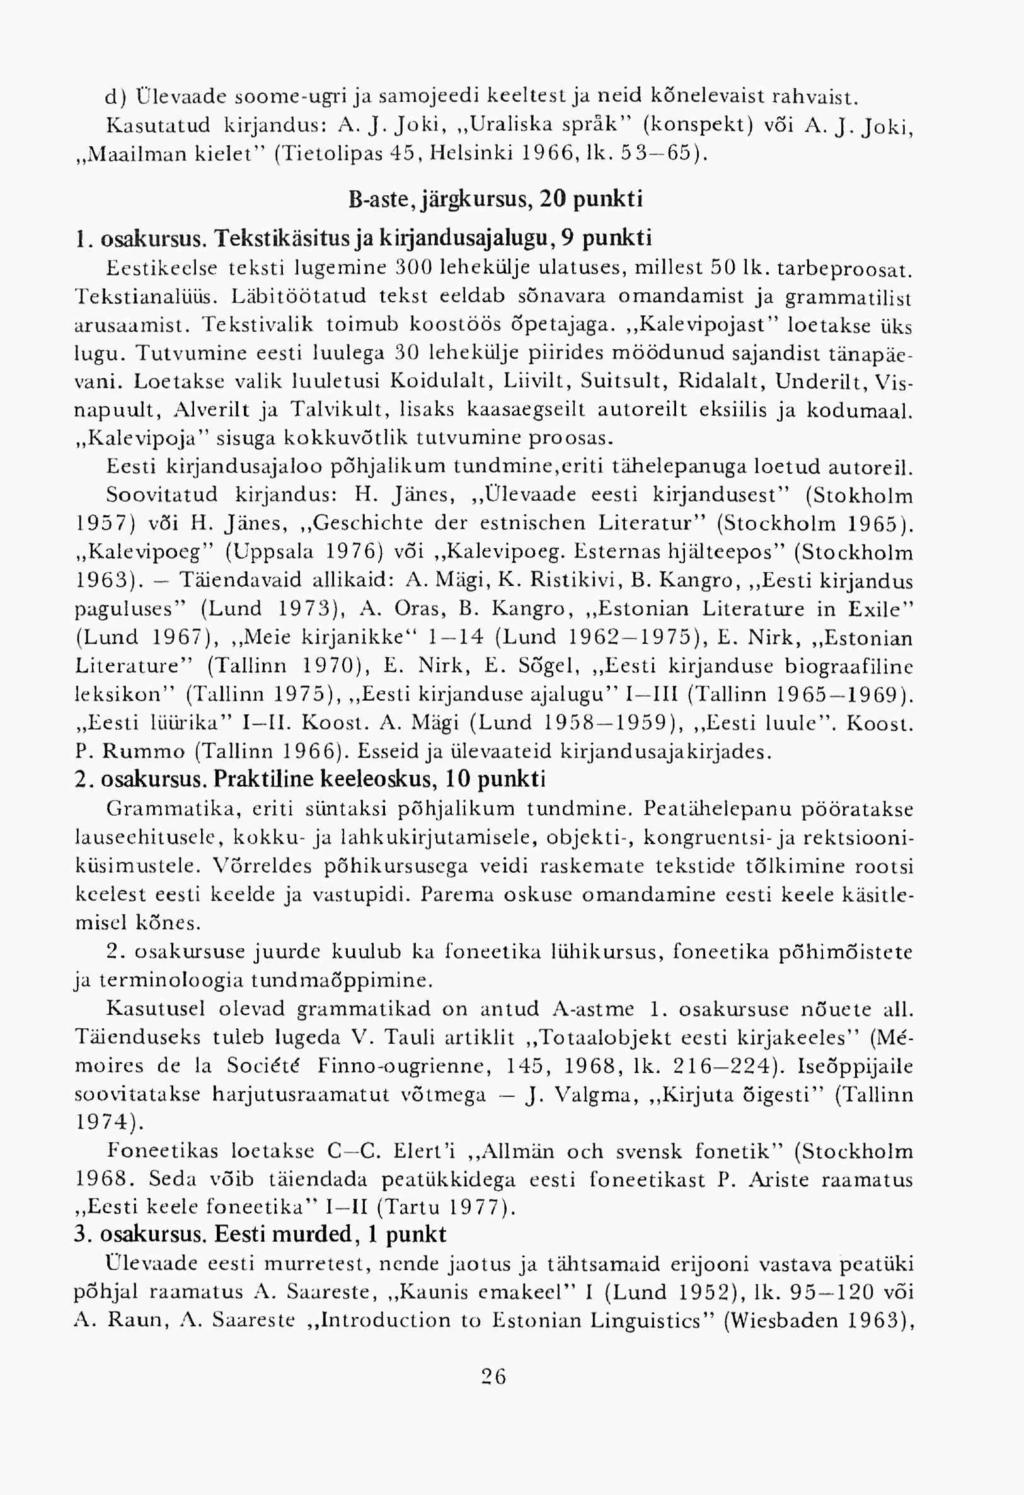 d) Ülevaade soomeugri ja samojeedi keeltest ja neid kõnelevaist rahvaist. Kasutatud kirjandus: A.J.Joki,,,Uraliska spräk" (konspekt) või A. J.Joki, Maailman kielet" (Tietolipas 45, Helsinki 1966, lk.